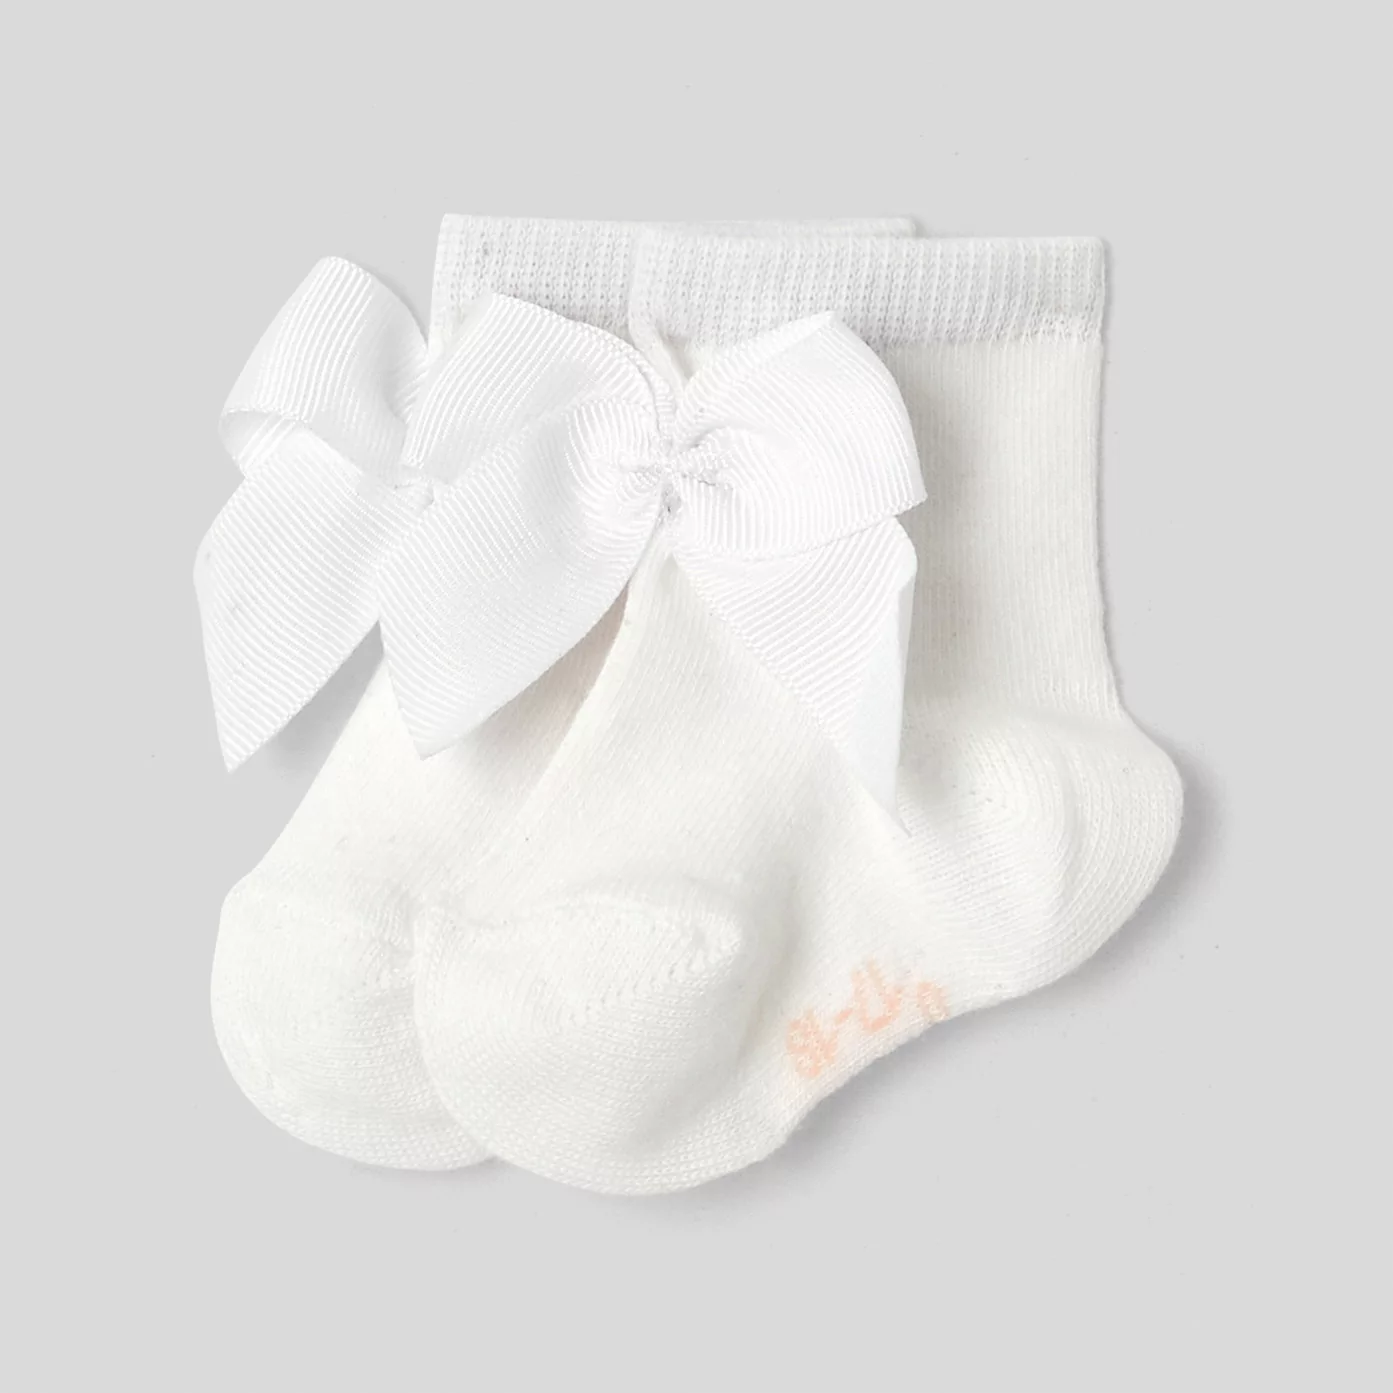 Baby girl bow socks